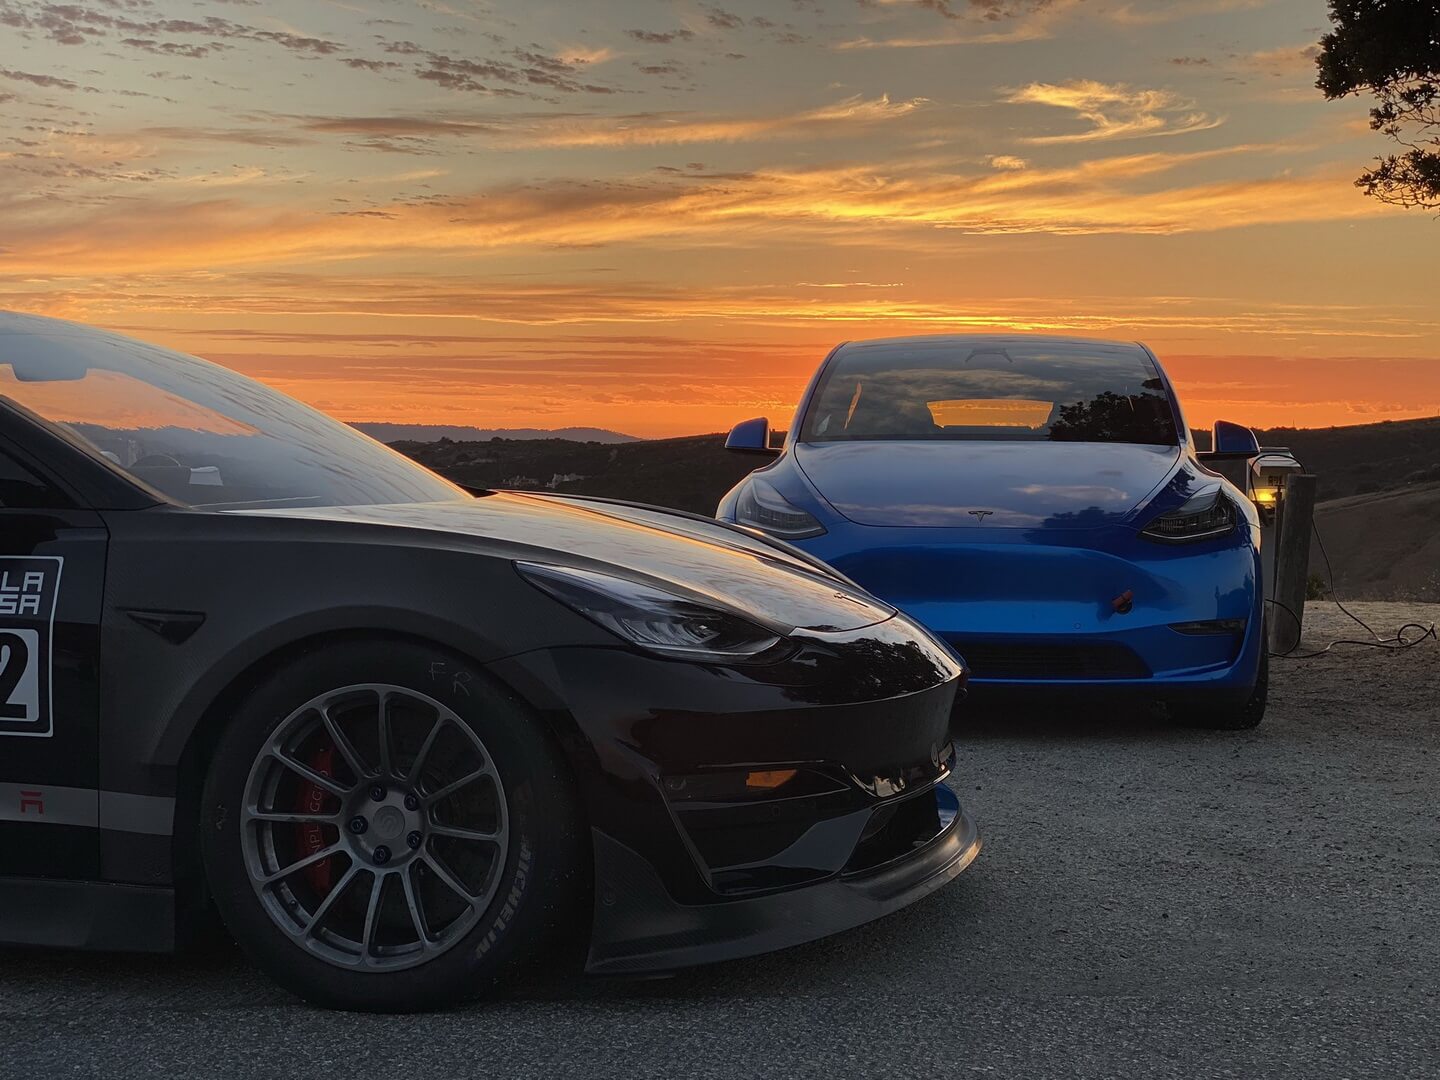 Model 3 Unplugged Performance установила рекорд в Laguna Seca для самого быстрого электромобиля (побила рекорд прототипа Tesla Model S Plaid). Model Y теперь также является самым быстрым кроссовером, с временем круга 1:39.1